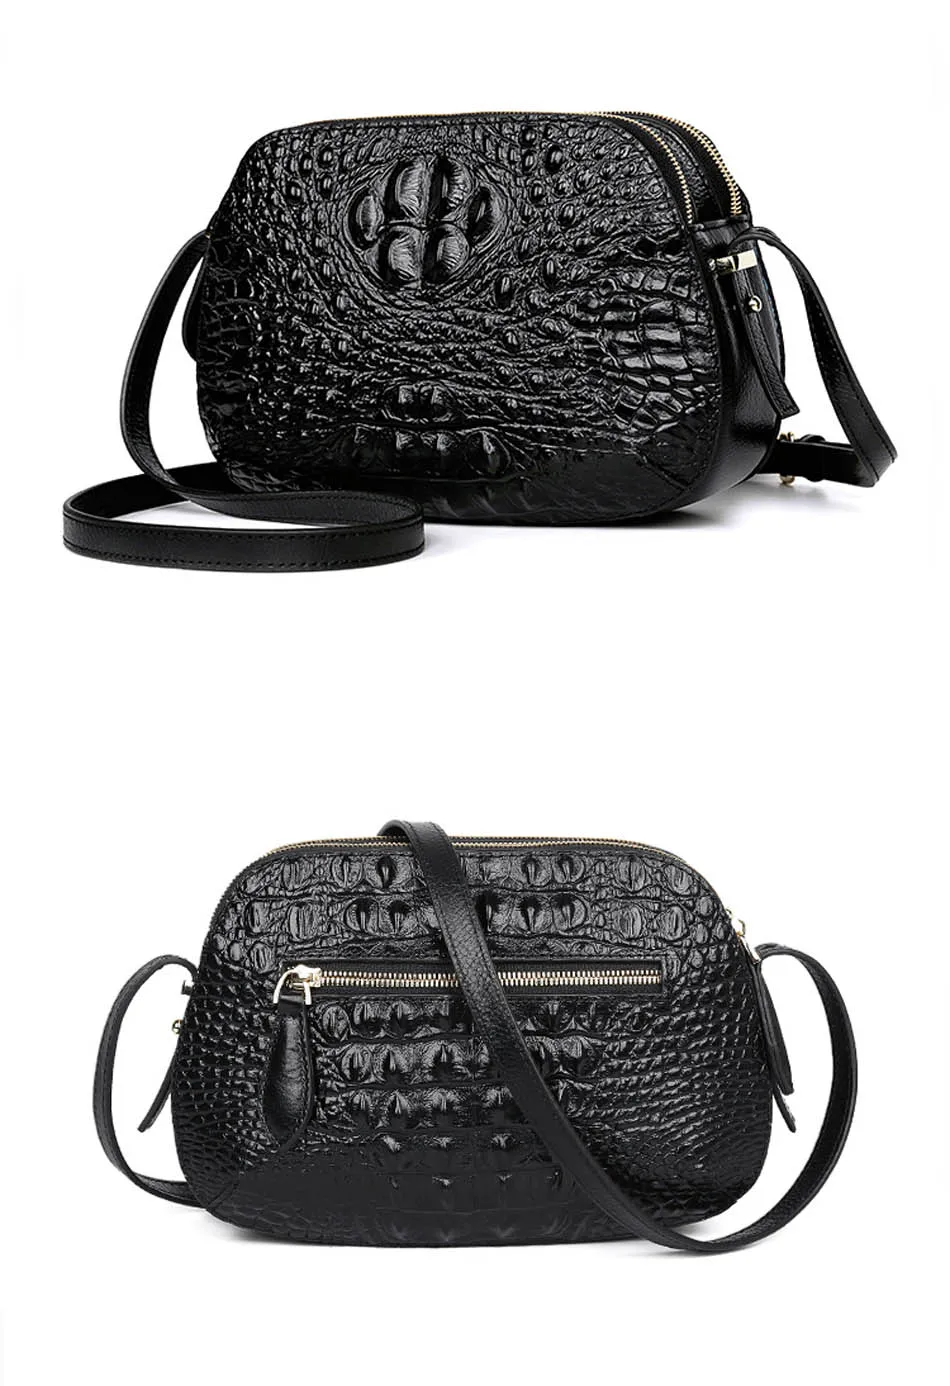 Женская обувь из натуральной кожи сумки для женщин 2019 новые модные с узором «крокодиловая кожа» сумка бренд мешок Дамы бренд посылка